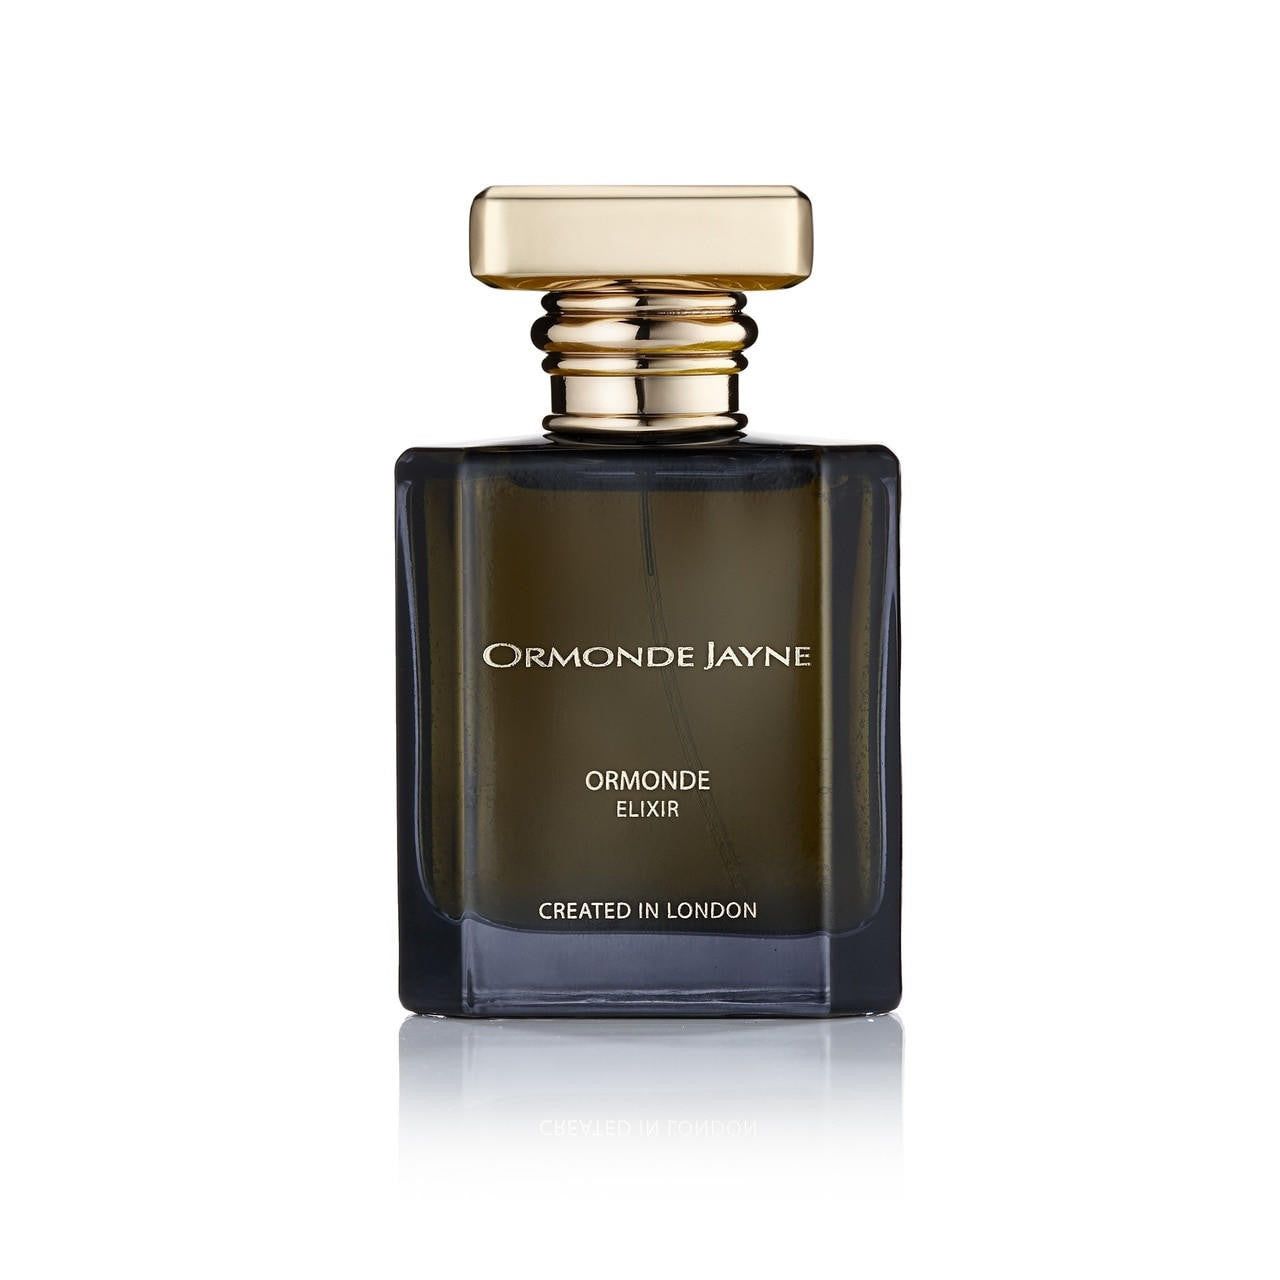  Ormonde Jayne ORMONDE Elixir Parfum 